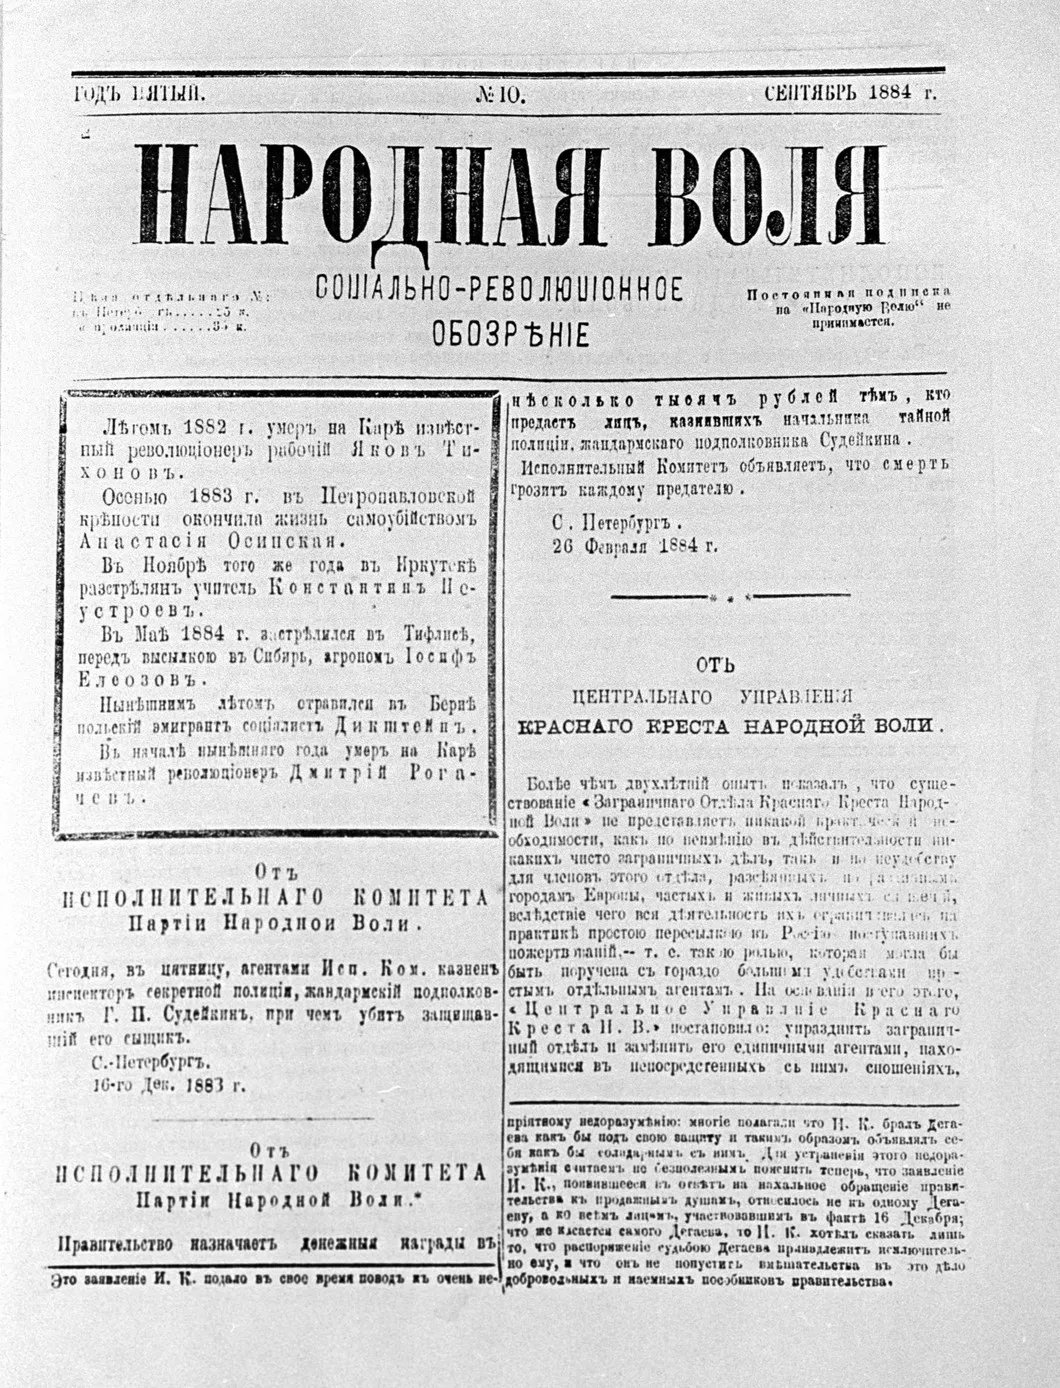 Социально-революционное обозрение «Народная воля», сентябрь 1884 года. Репродукция. Фото: РИА Новости